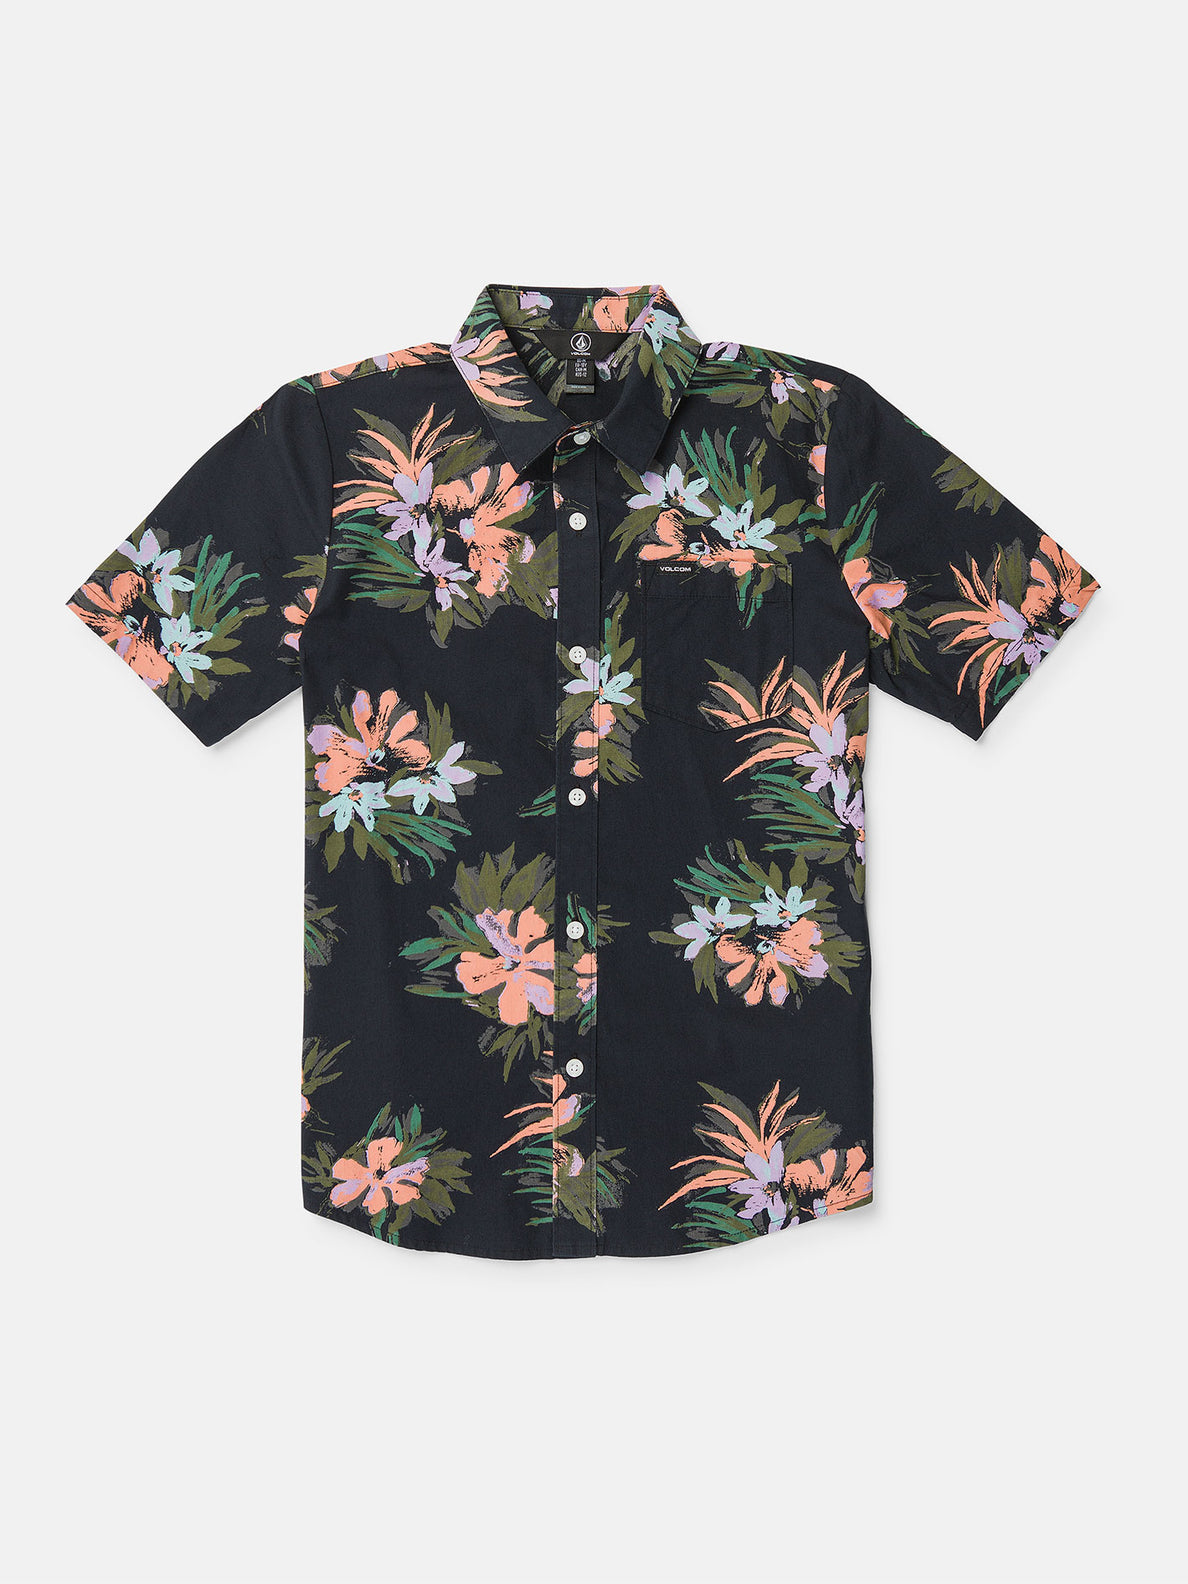 Big Boys Warbler Short Sleeve Shirt - Black Floral Print 3